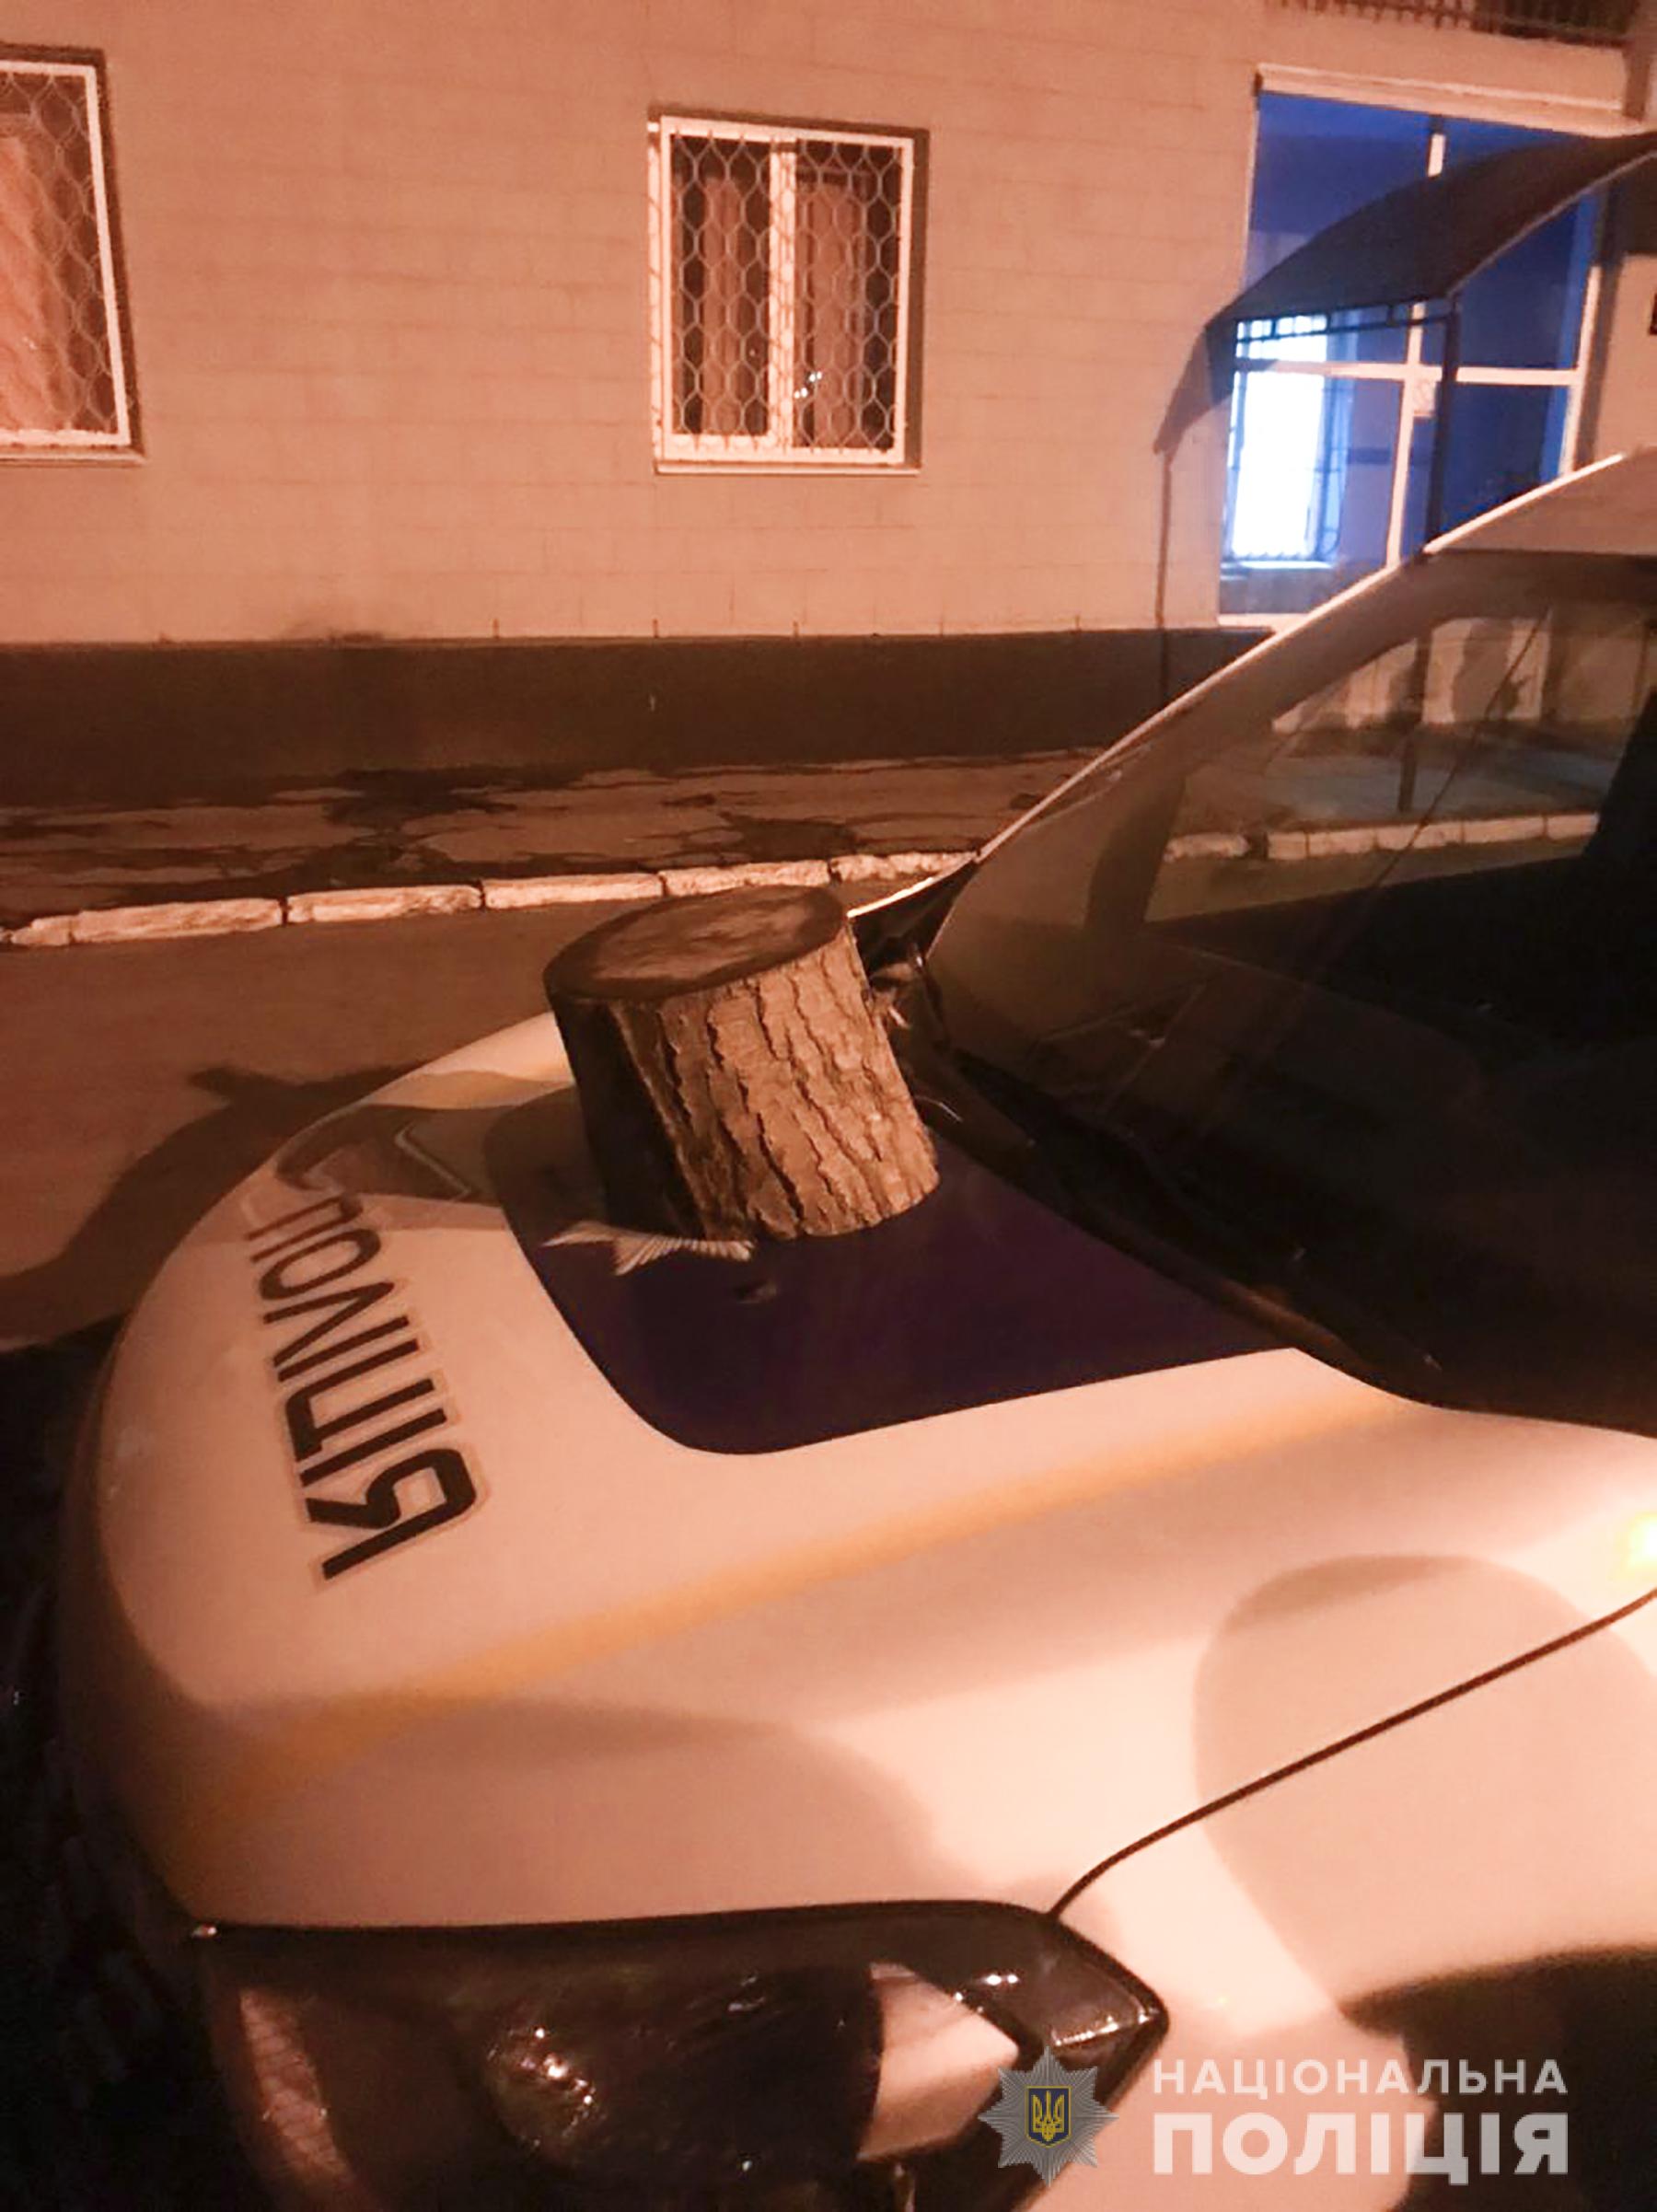 Пьяный житель Запорожья бросал камни в окна отделения полиции и повредил служебное авто (ФОТО)